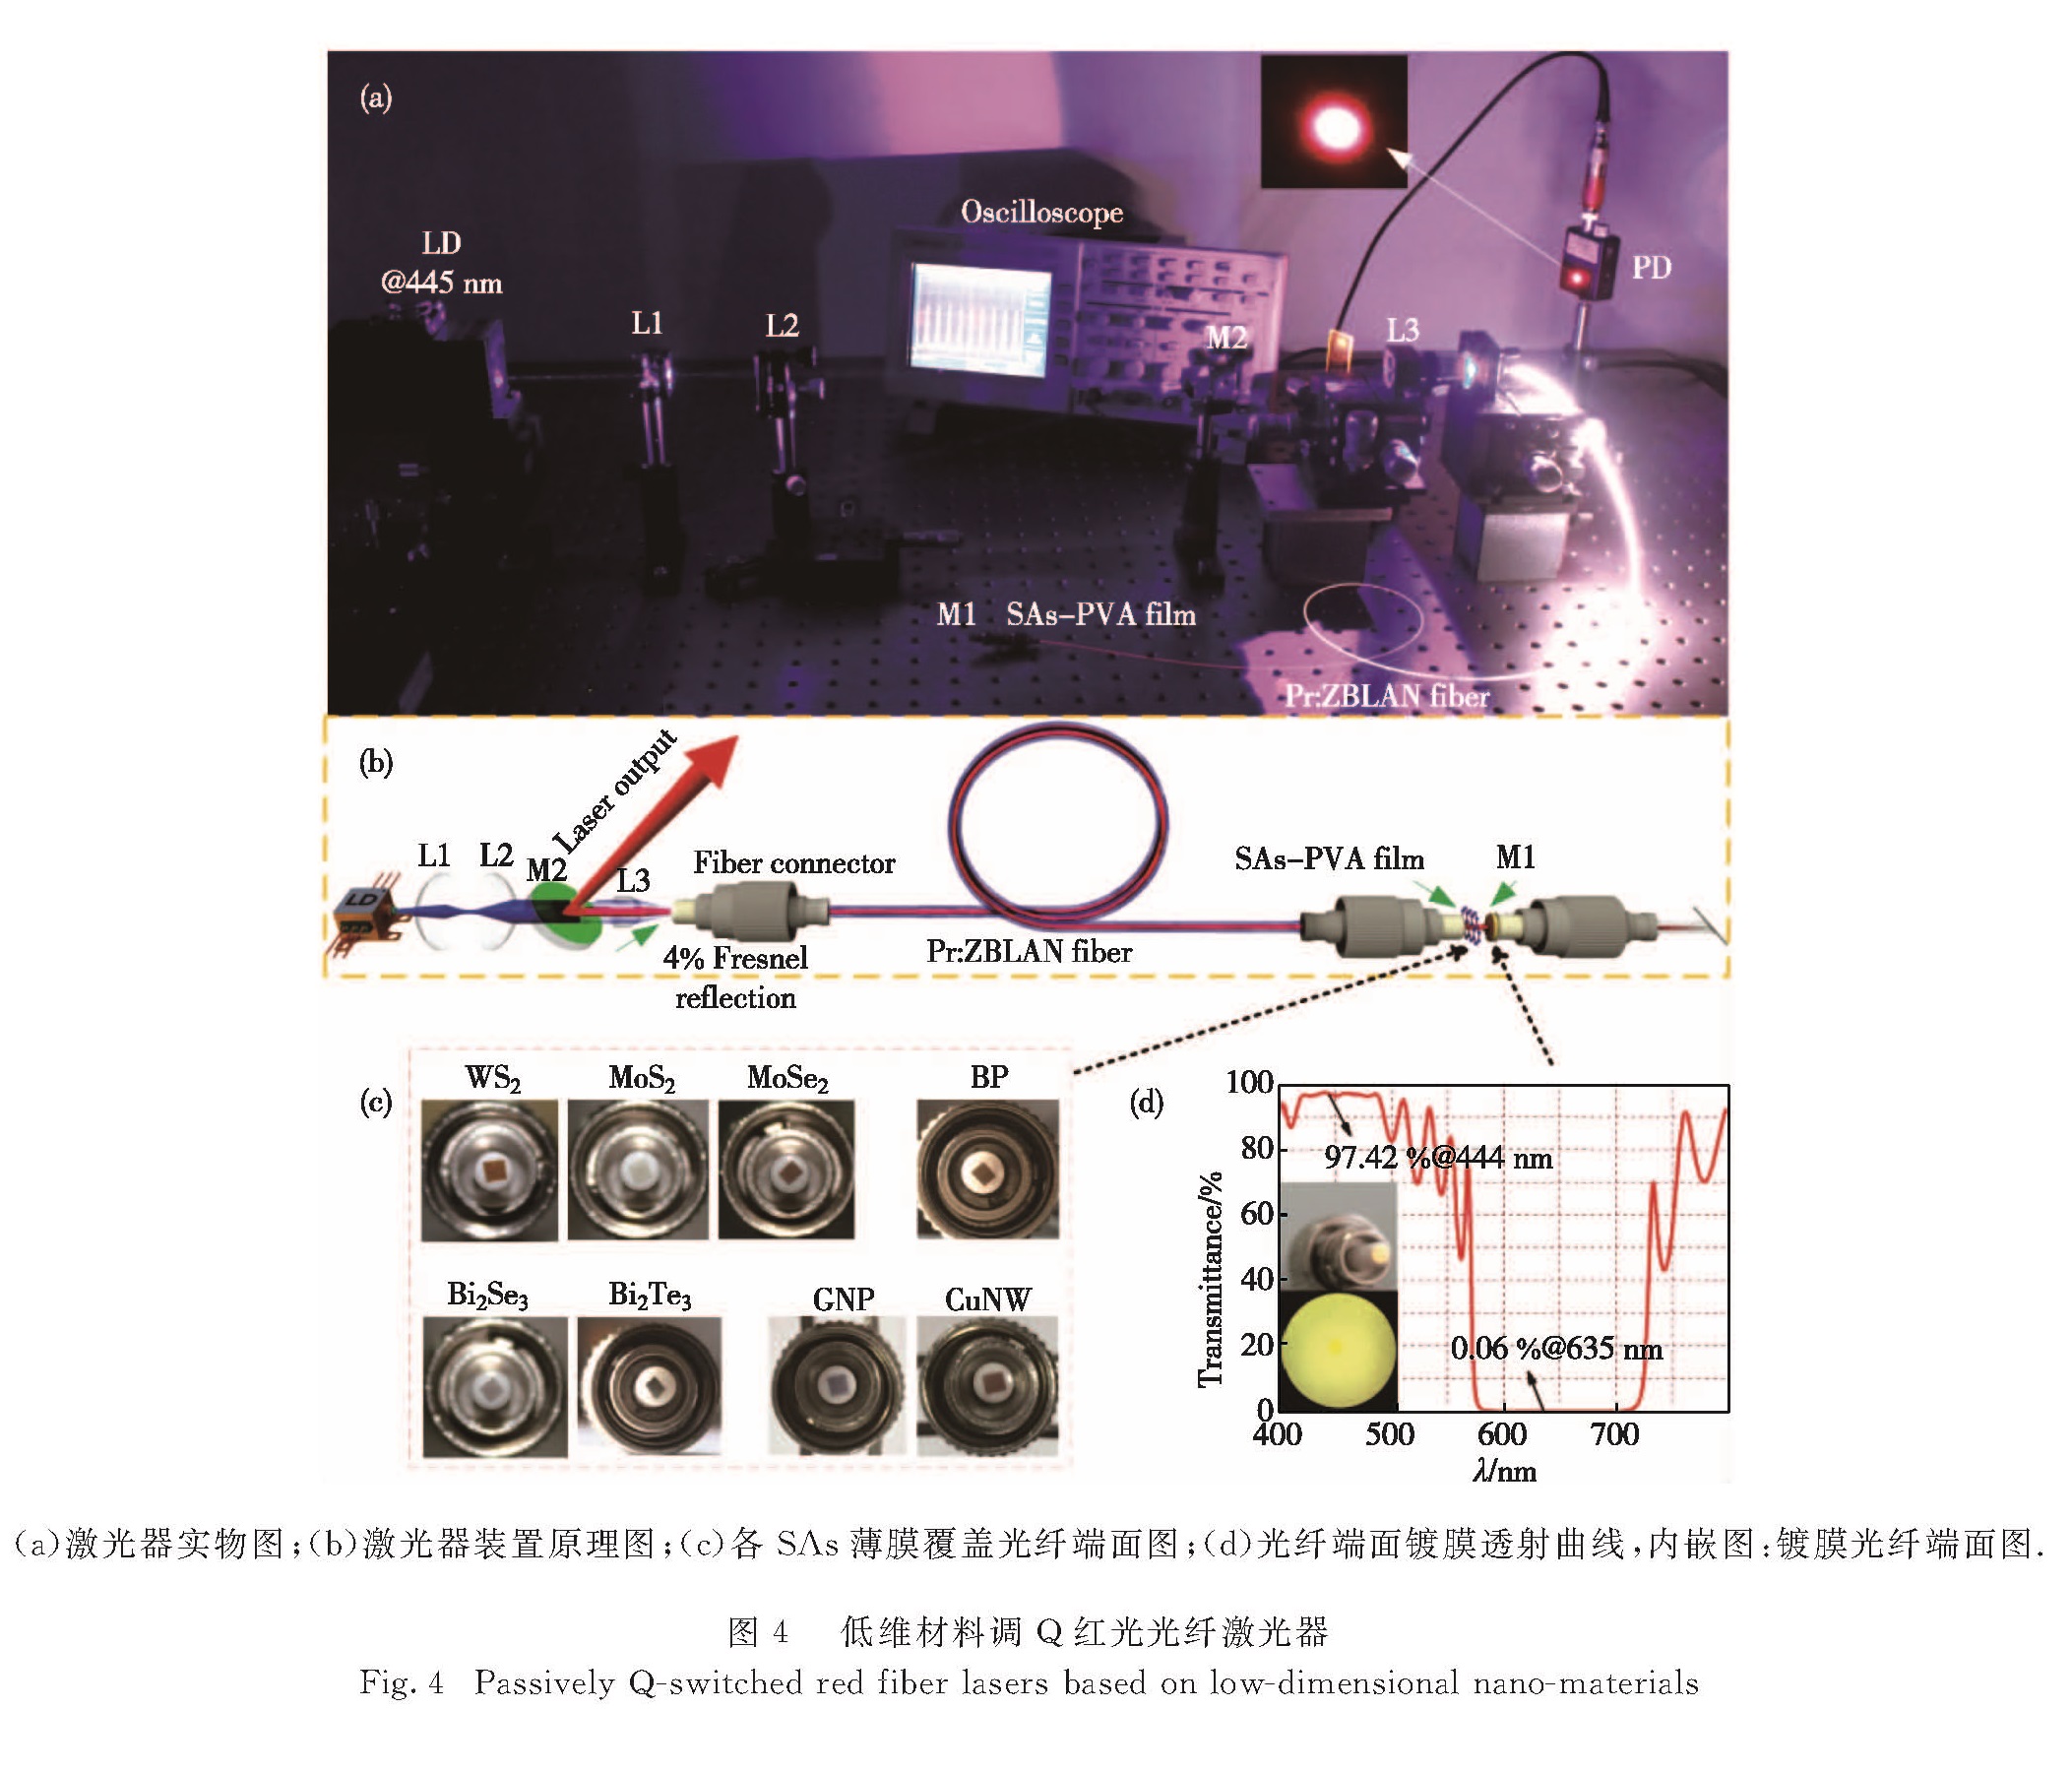 图4 低维材料调Q红光光纤激光器<br/>Fig.4 Passively Q-switched red fiber lasers based on low-dimensional nano-materials